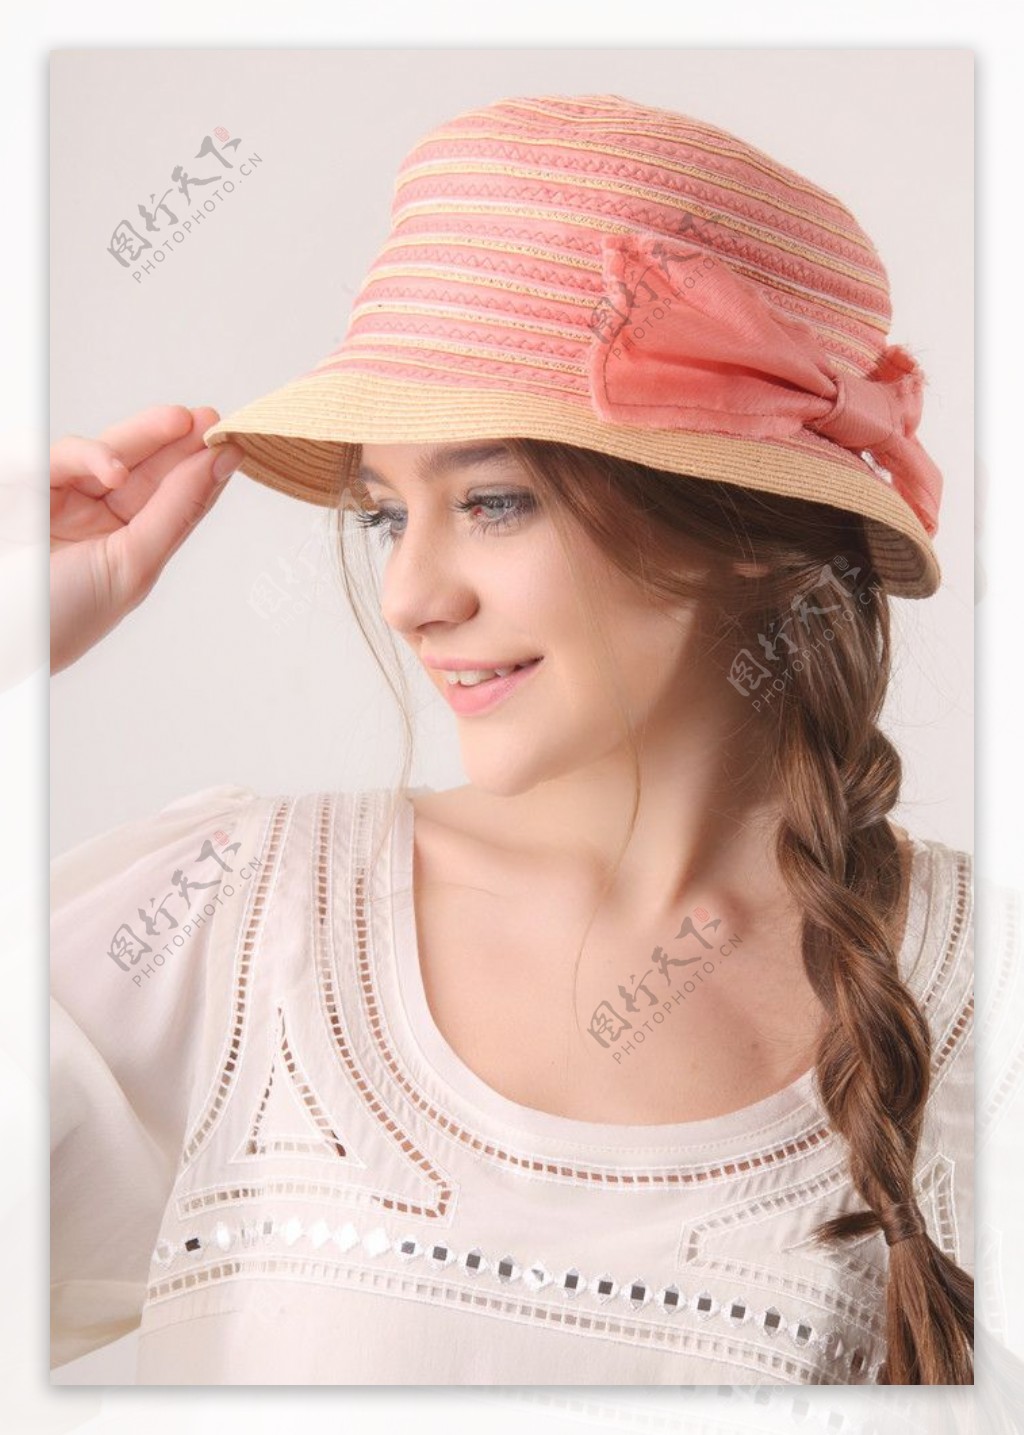 戴帽子手拿鲜花的清纯美女图片 - 免费可商用图片 - CC0素材网